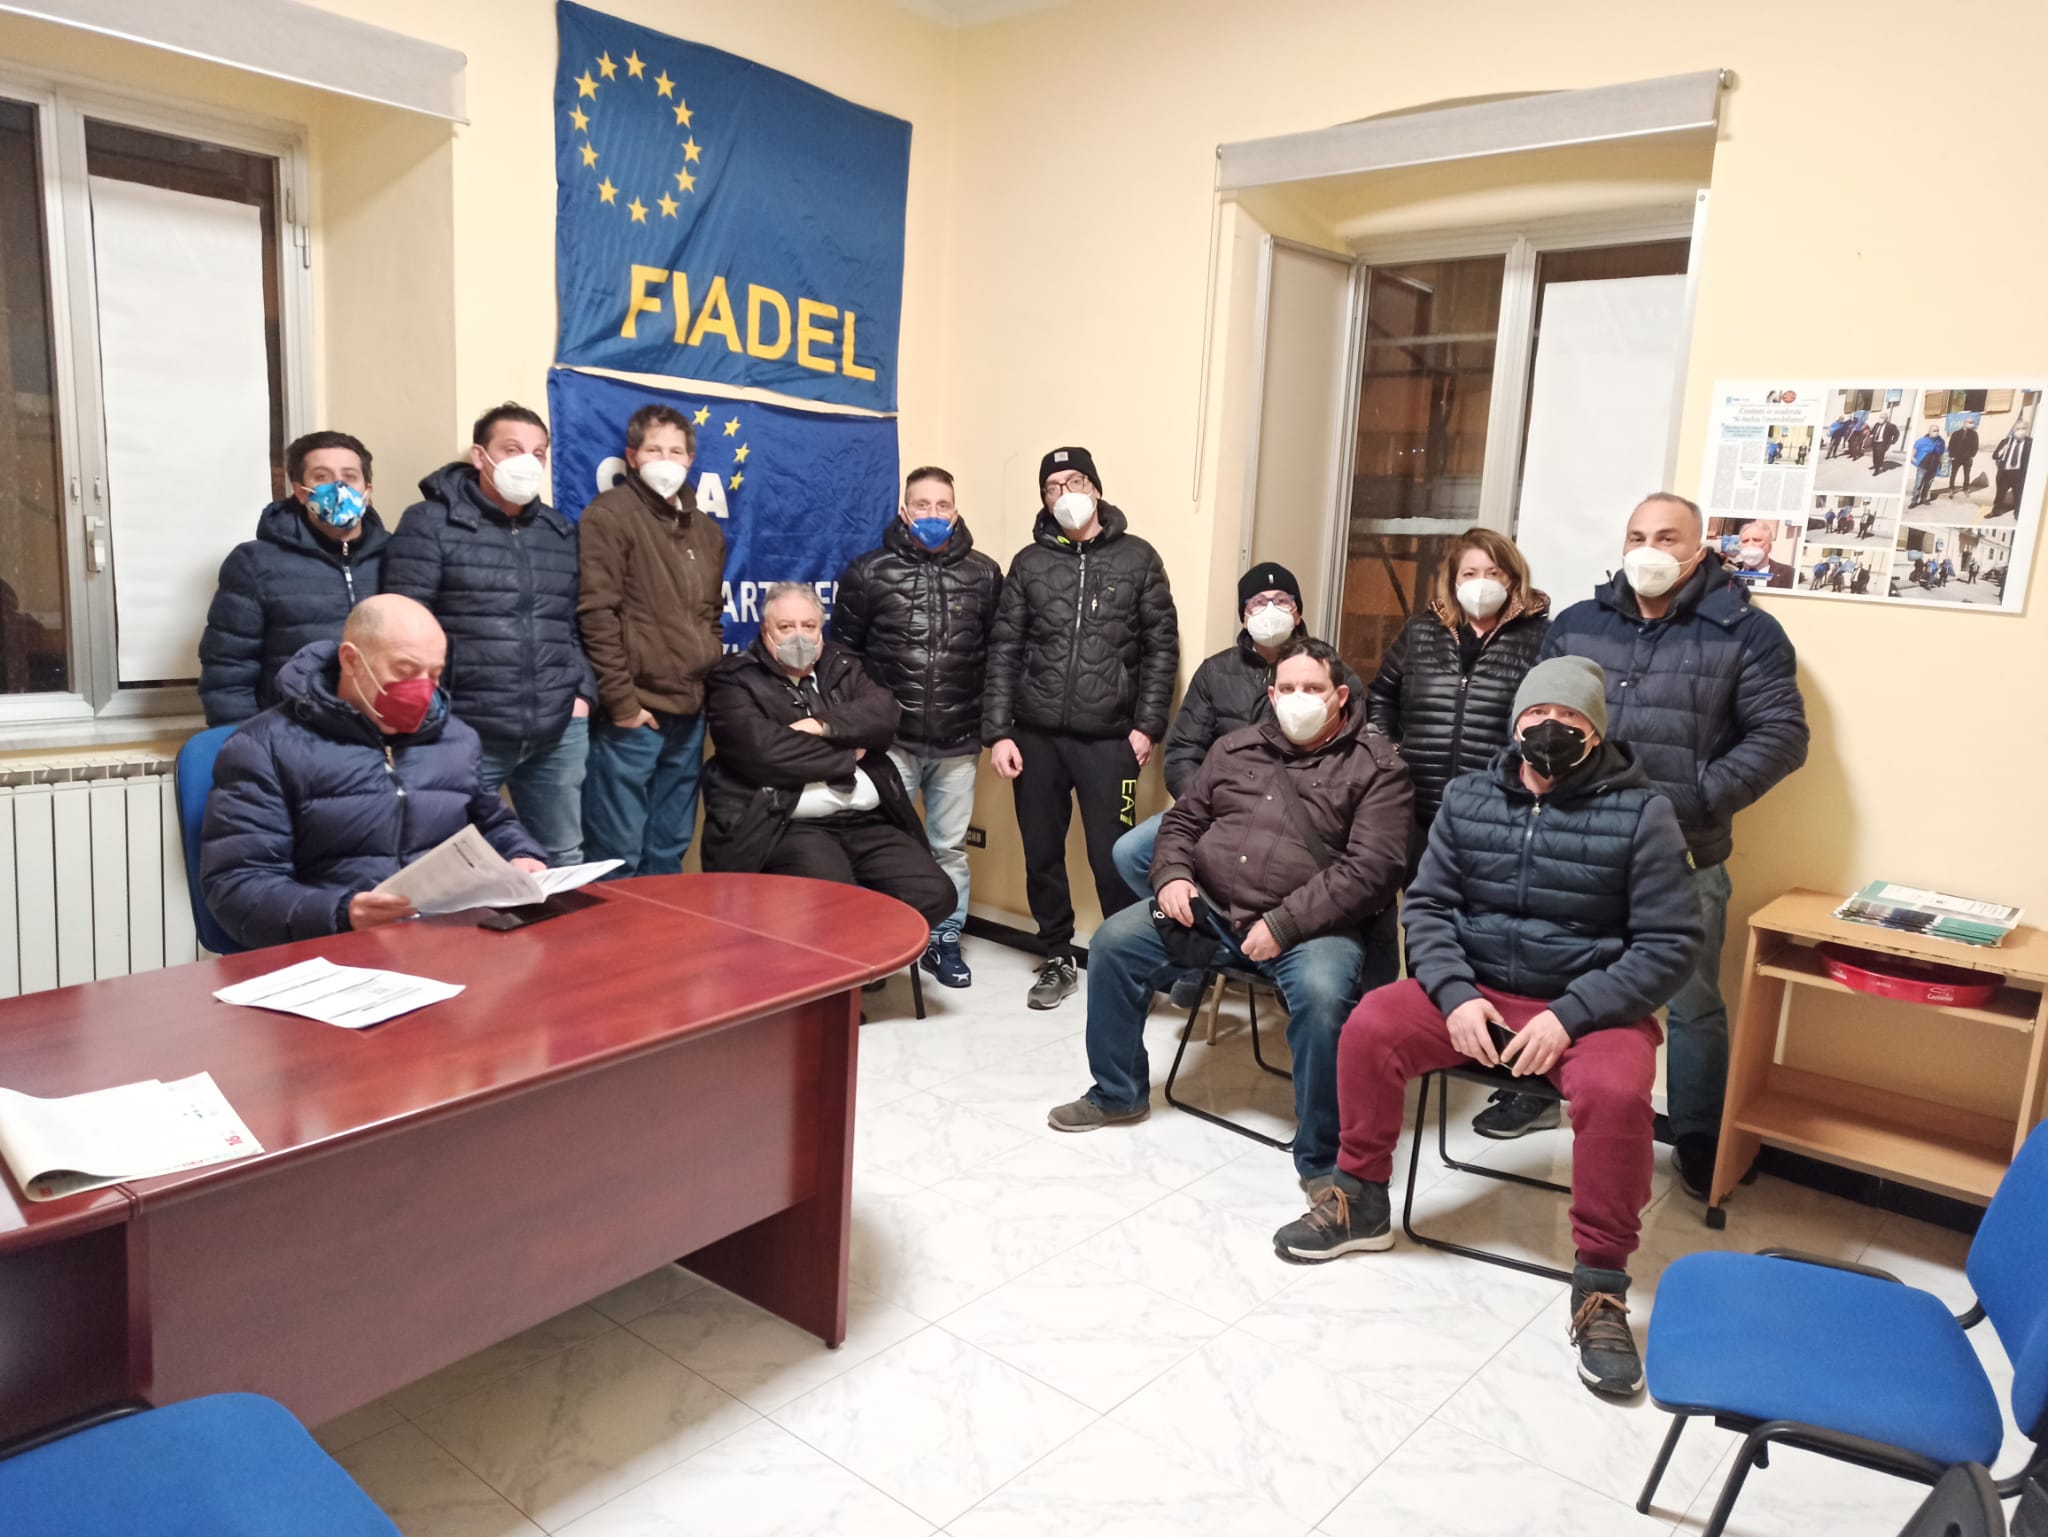 Salerno: Fiadel, ricollocazione lavoratori “La Fabbrica”, chiesto incontro a Comune e società